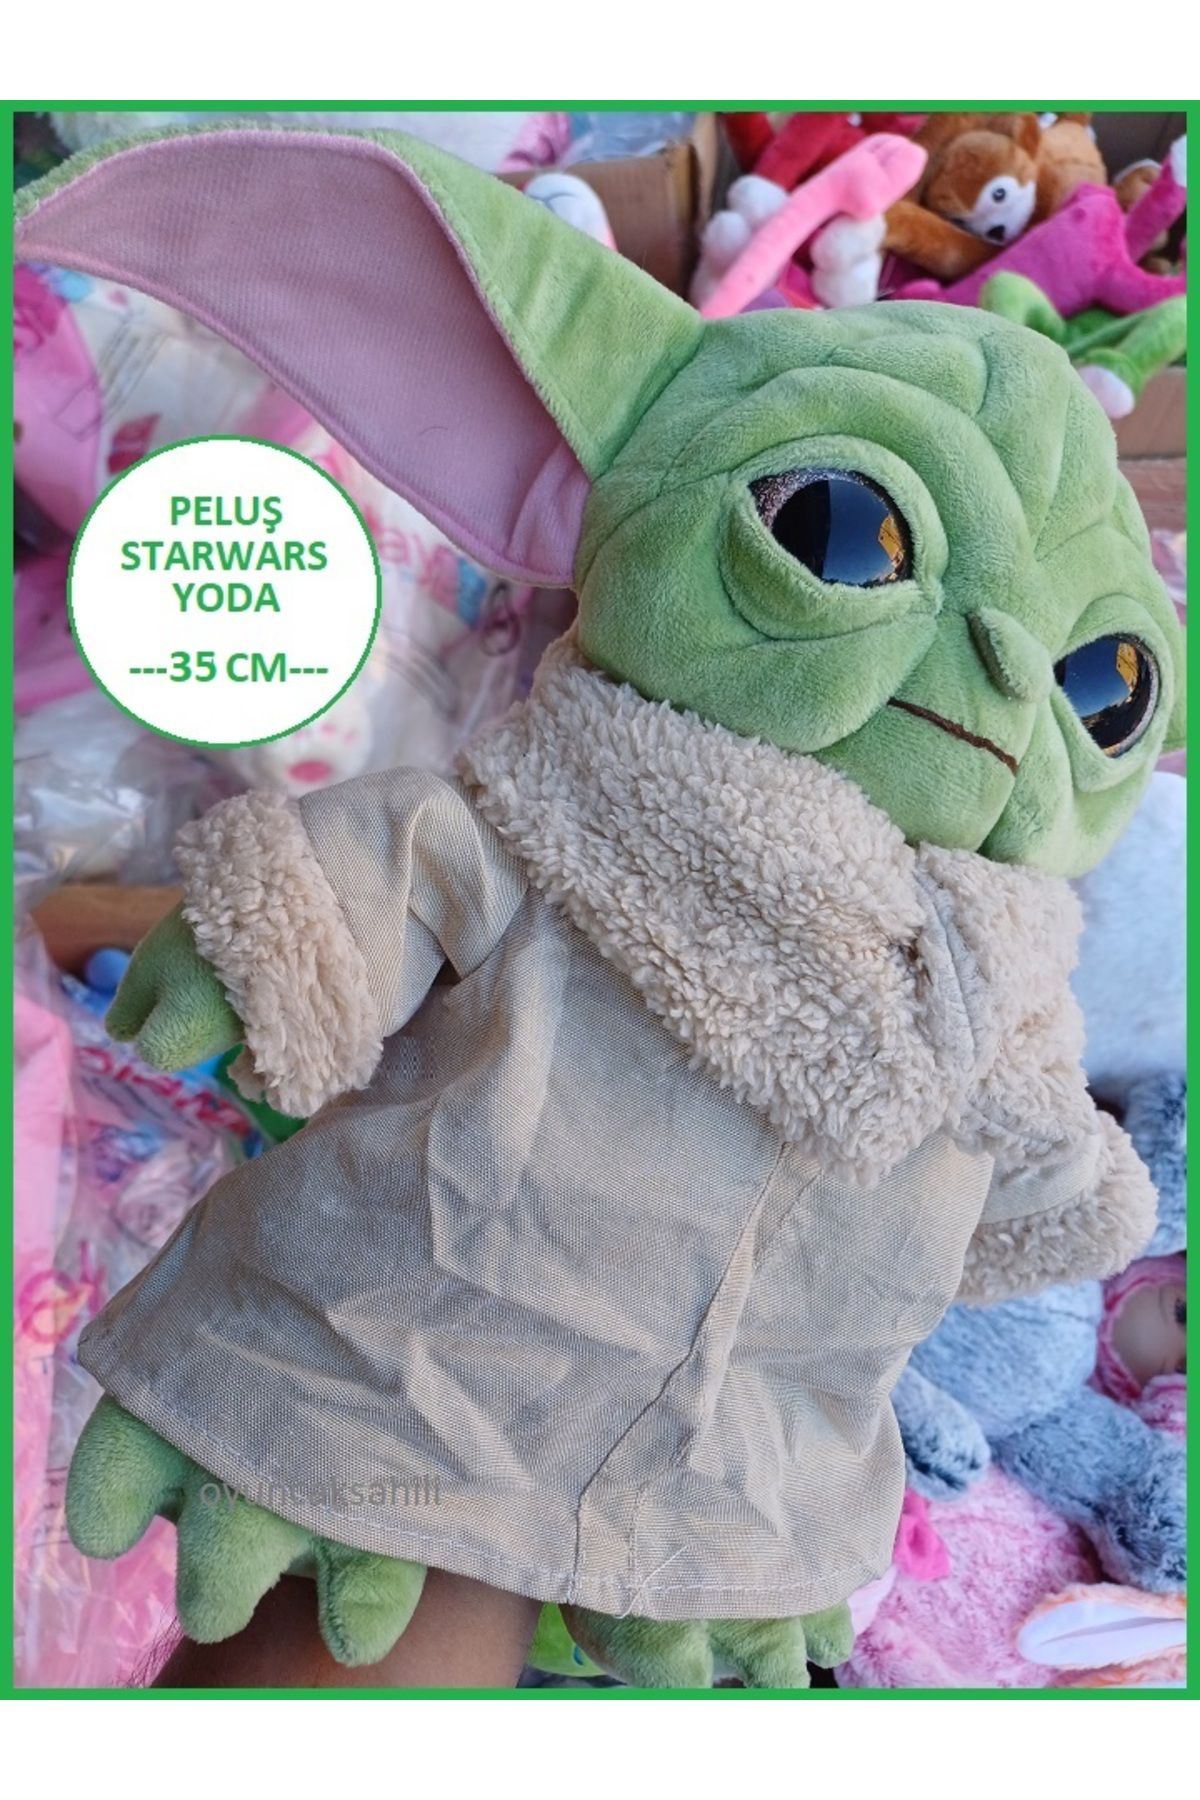 OYUNCAKSAHİLİ Baby Yoda Star Wars Kürklü Kumaş Grogu Bebek Yoda Figür Peluş 35cm Oyuncak A Kalite